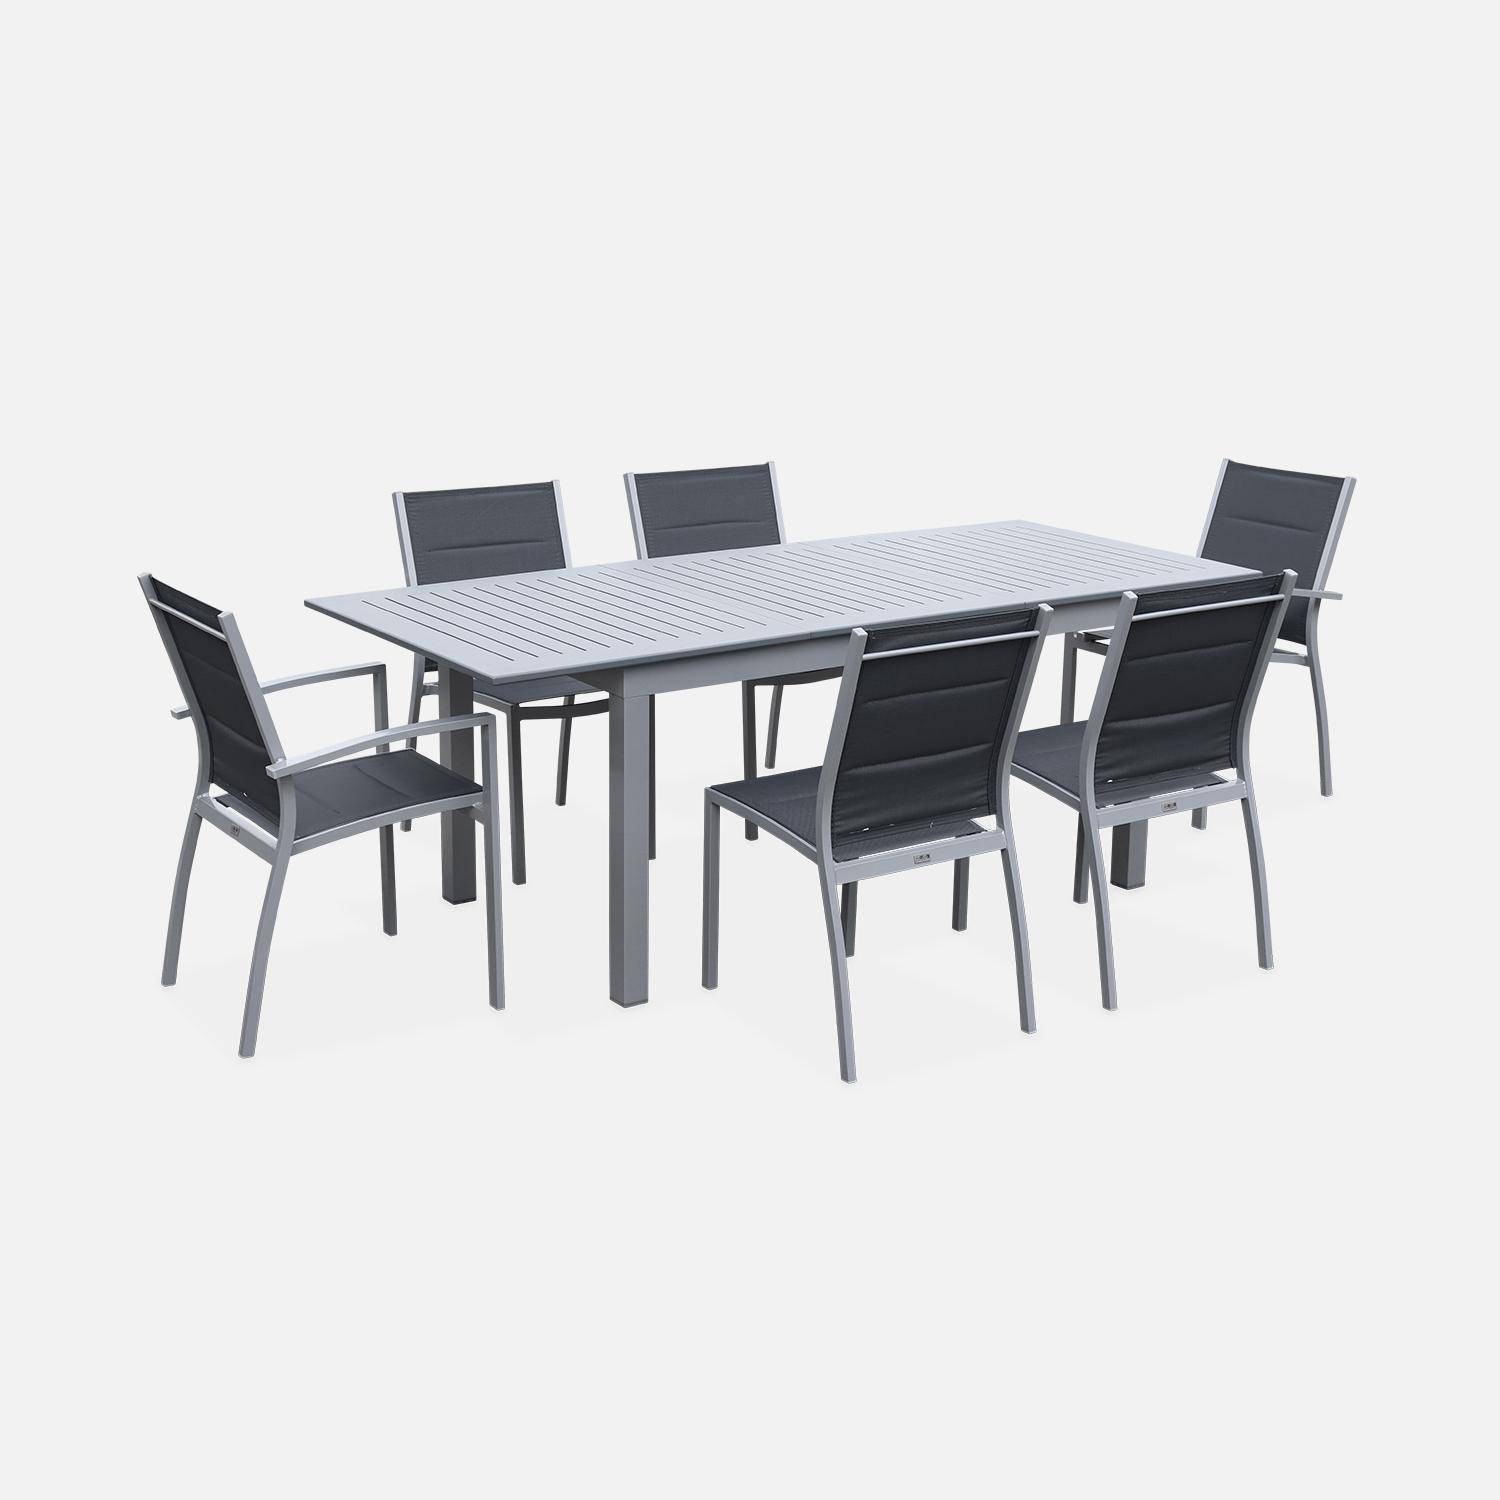 Set tavolo da giardino allungabile - modello: Chicago 210, colore: Grigio - Tavolo in alluminio, dimensioni: 150/210cm con prolunga e 6 sedute in textilene Photo1